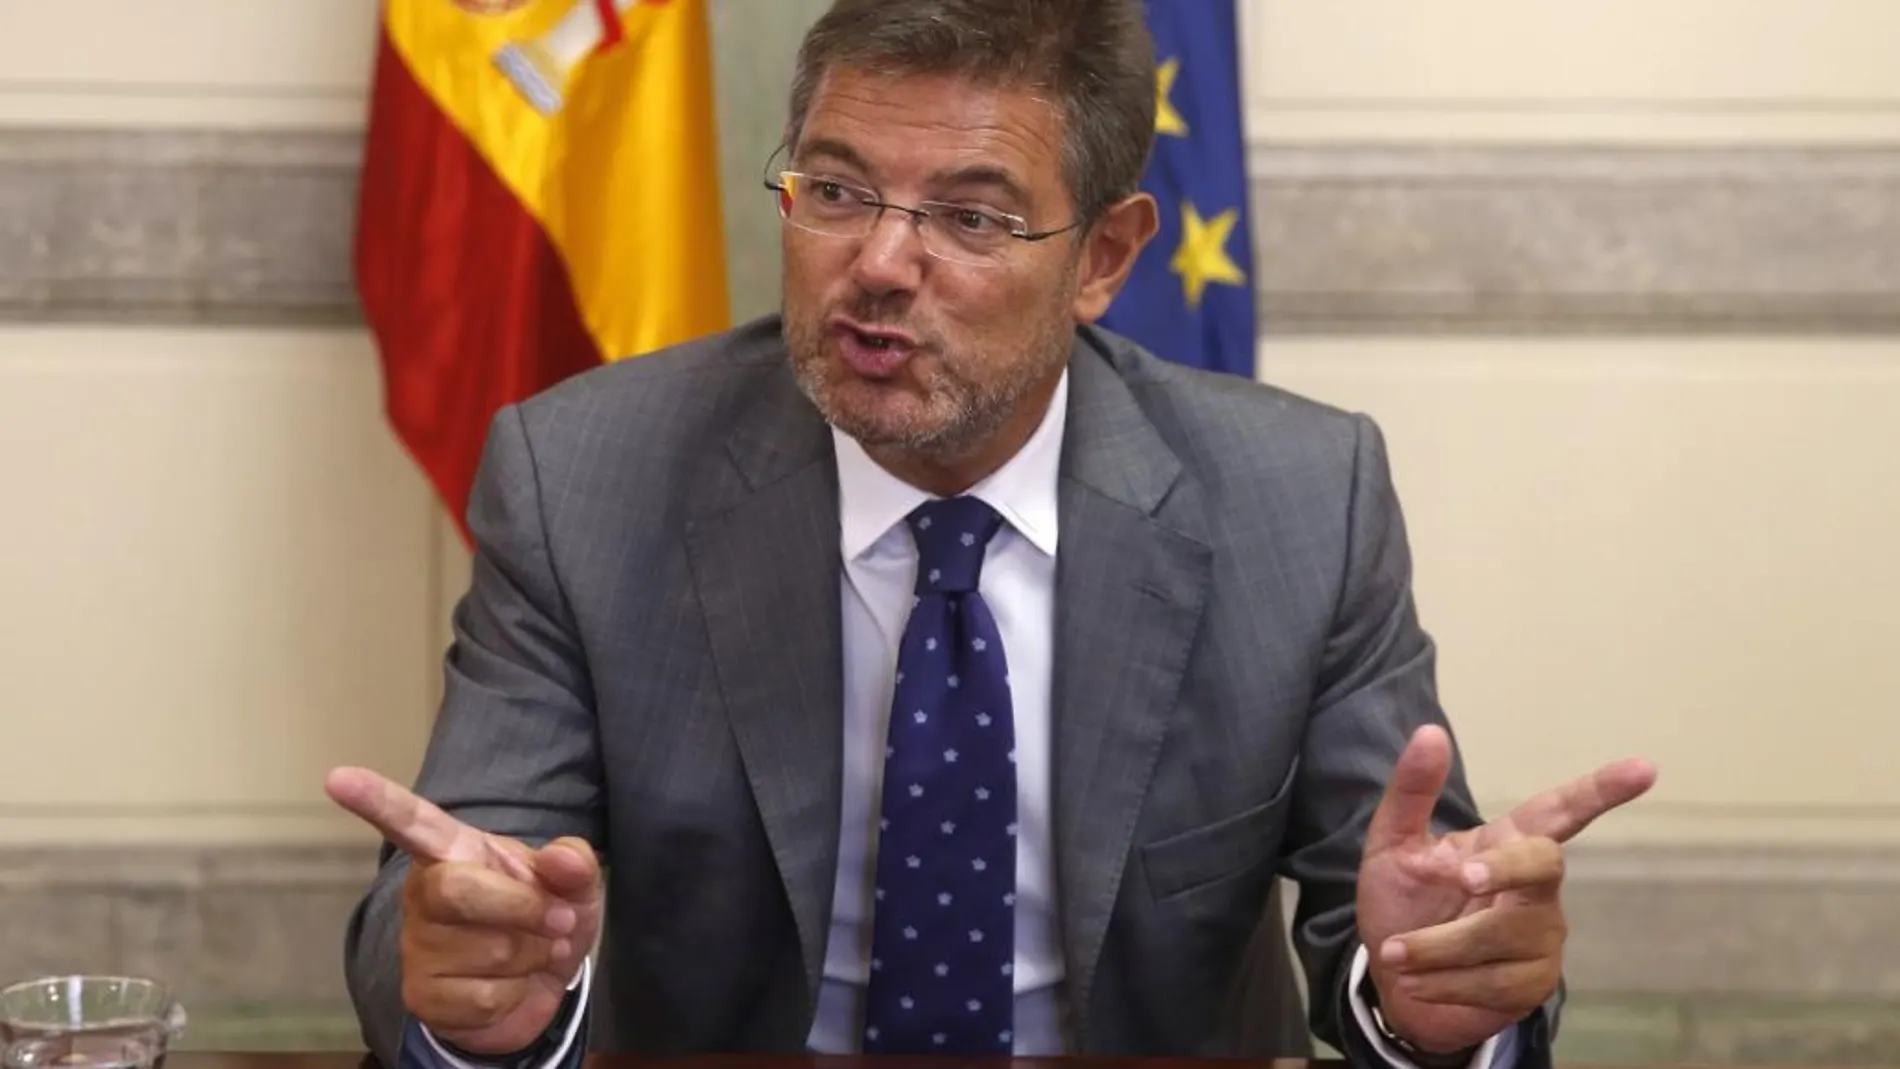 El ministro de Justicia en funciones, Rafael Catalá